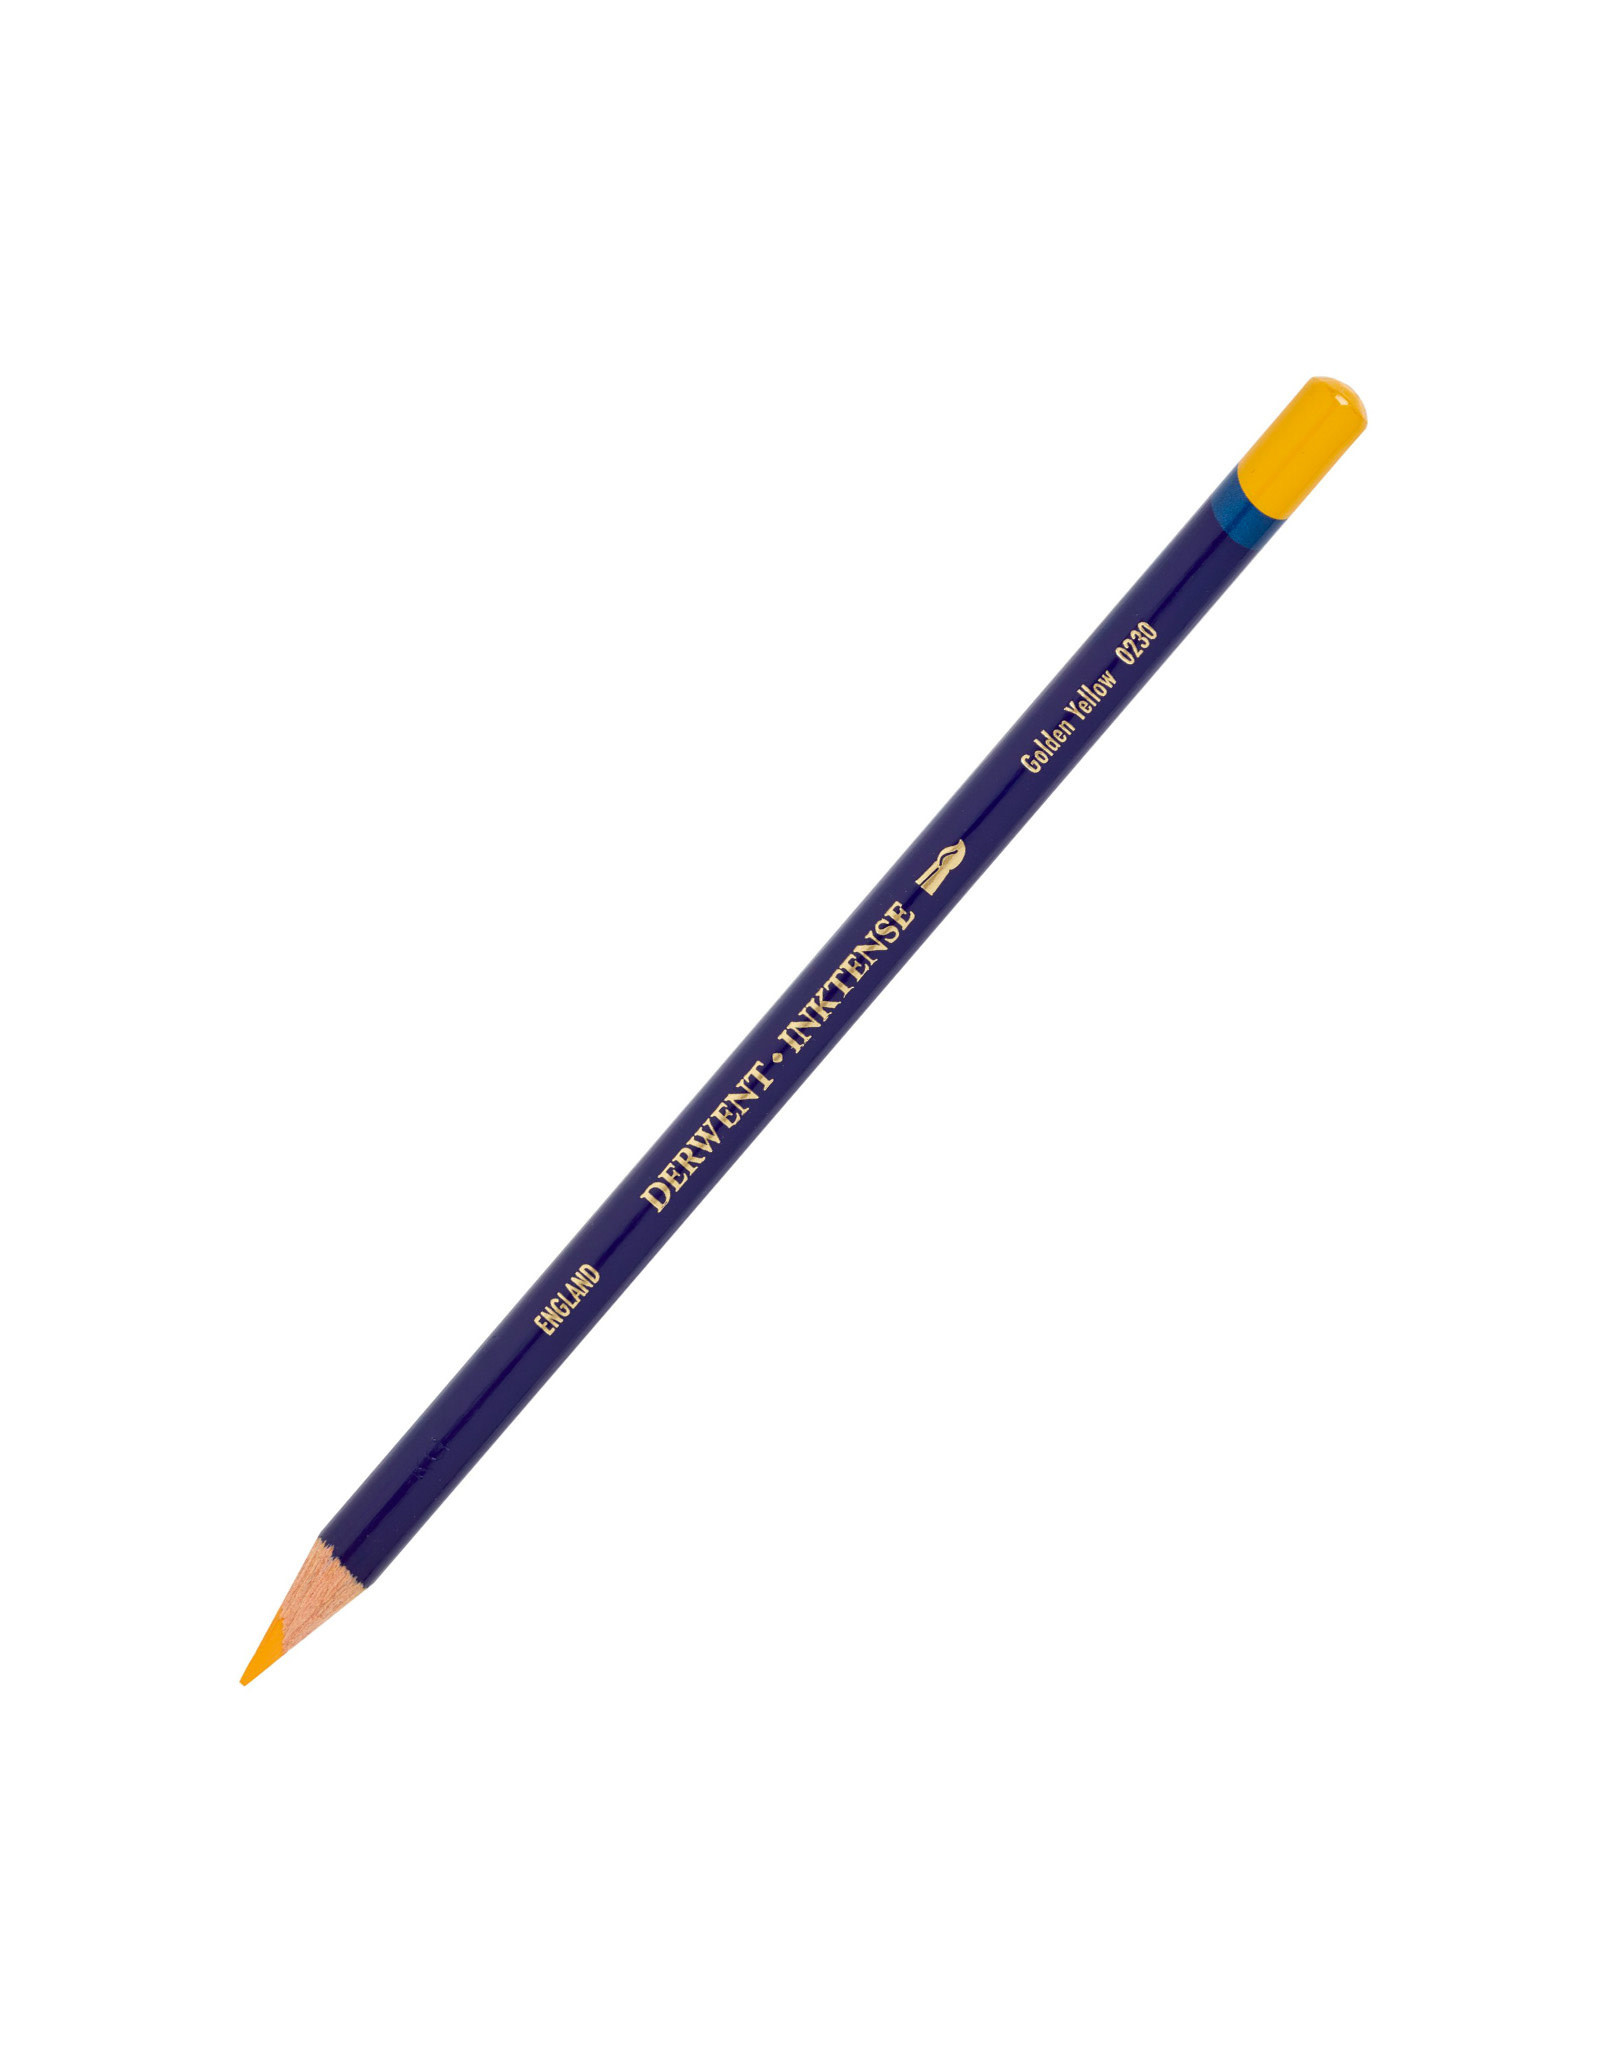 Derwent Derwent Inktense Pencil, Golden Yellow